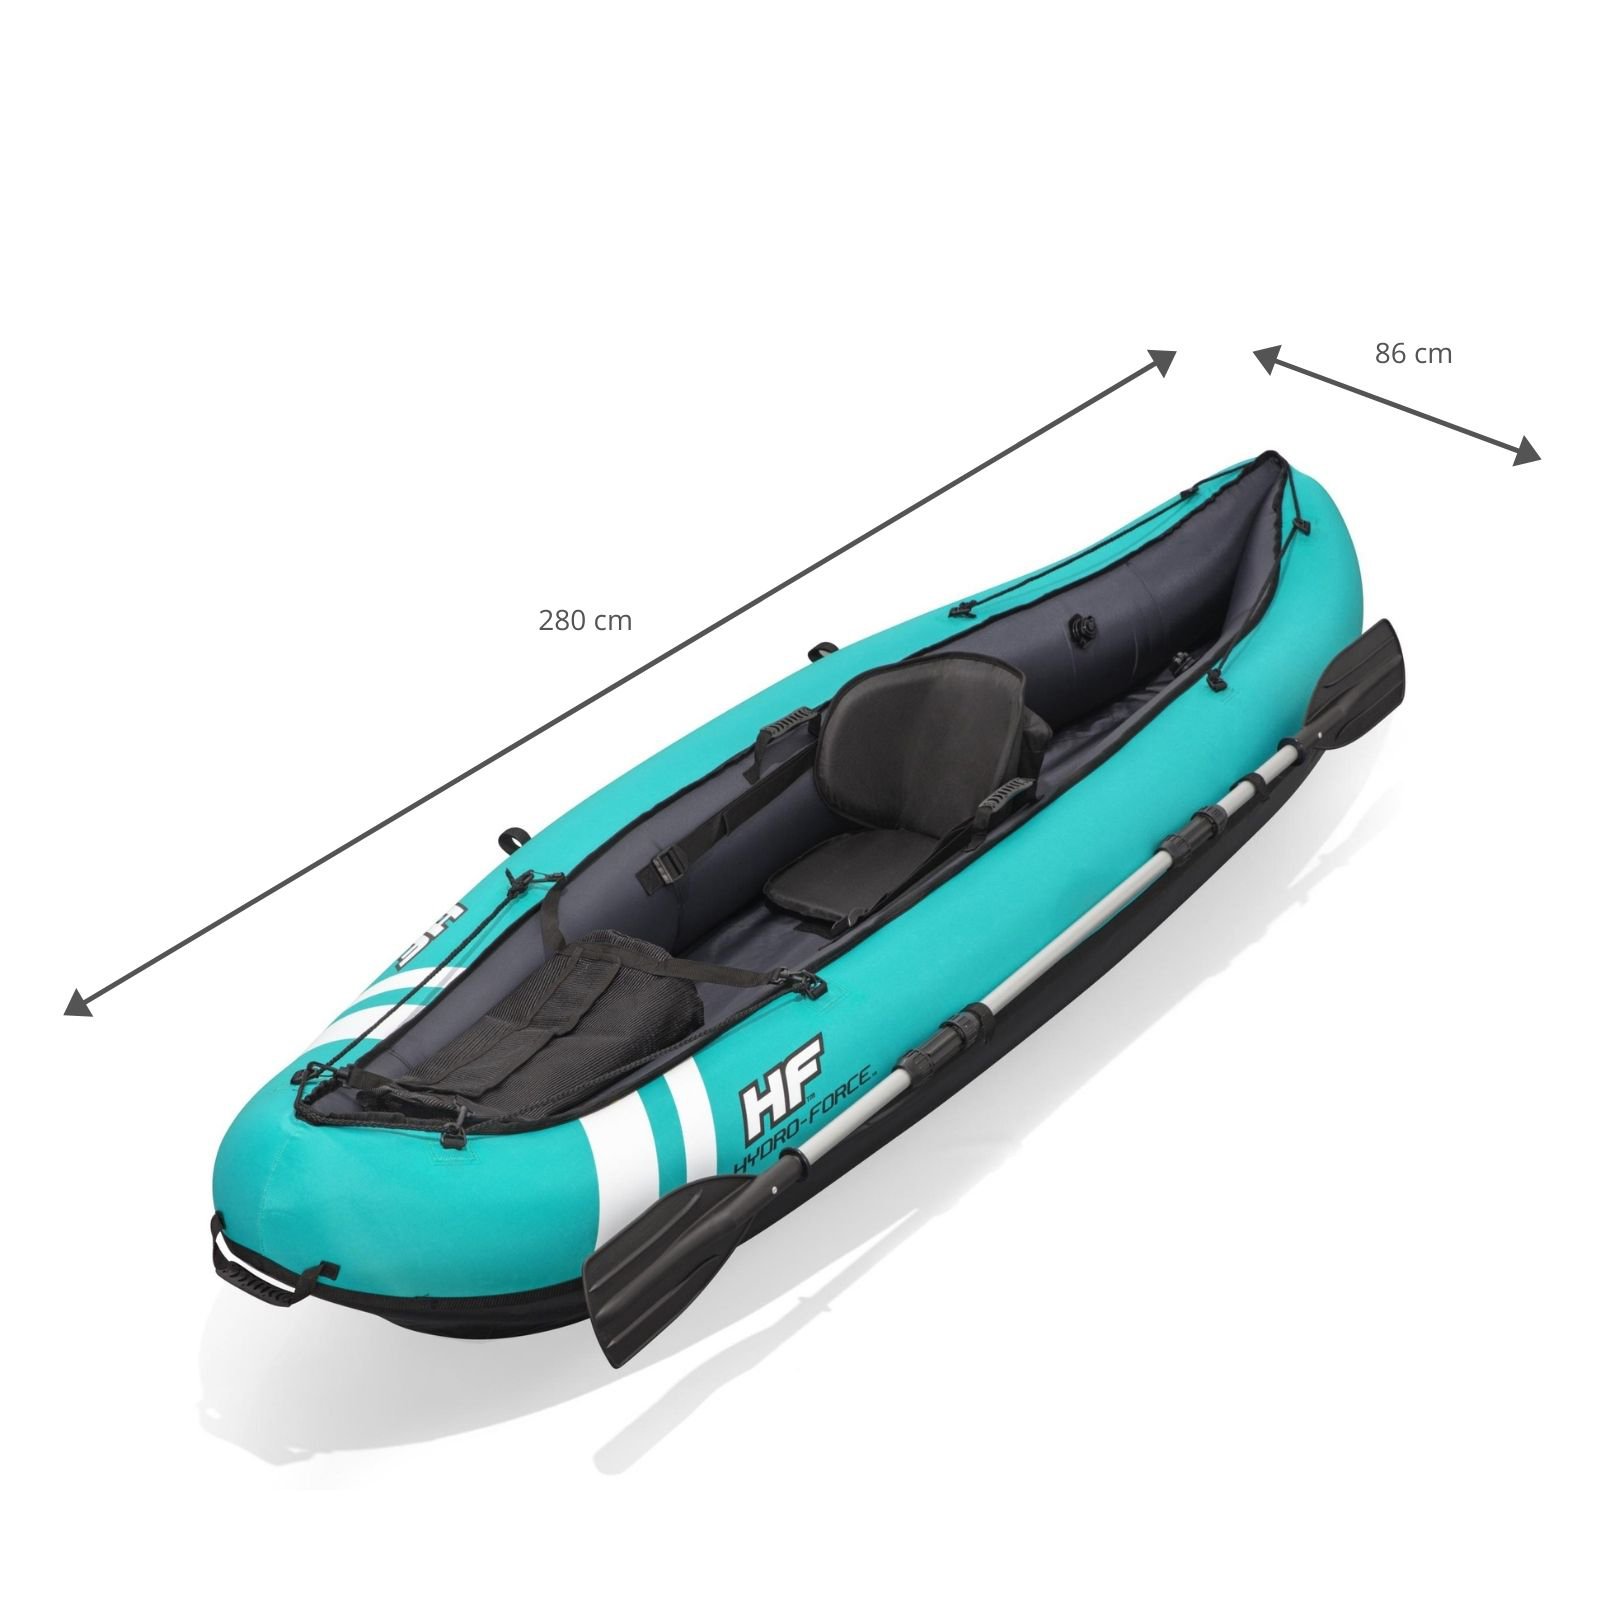 Kayak Hinchable Bestway Hydro-force Ventura 280x86 Cm 1 Persona Con Inflador Y Remo